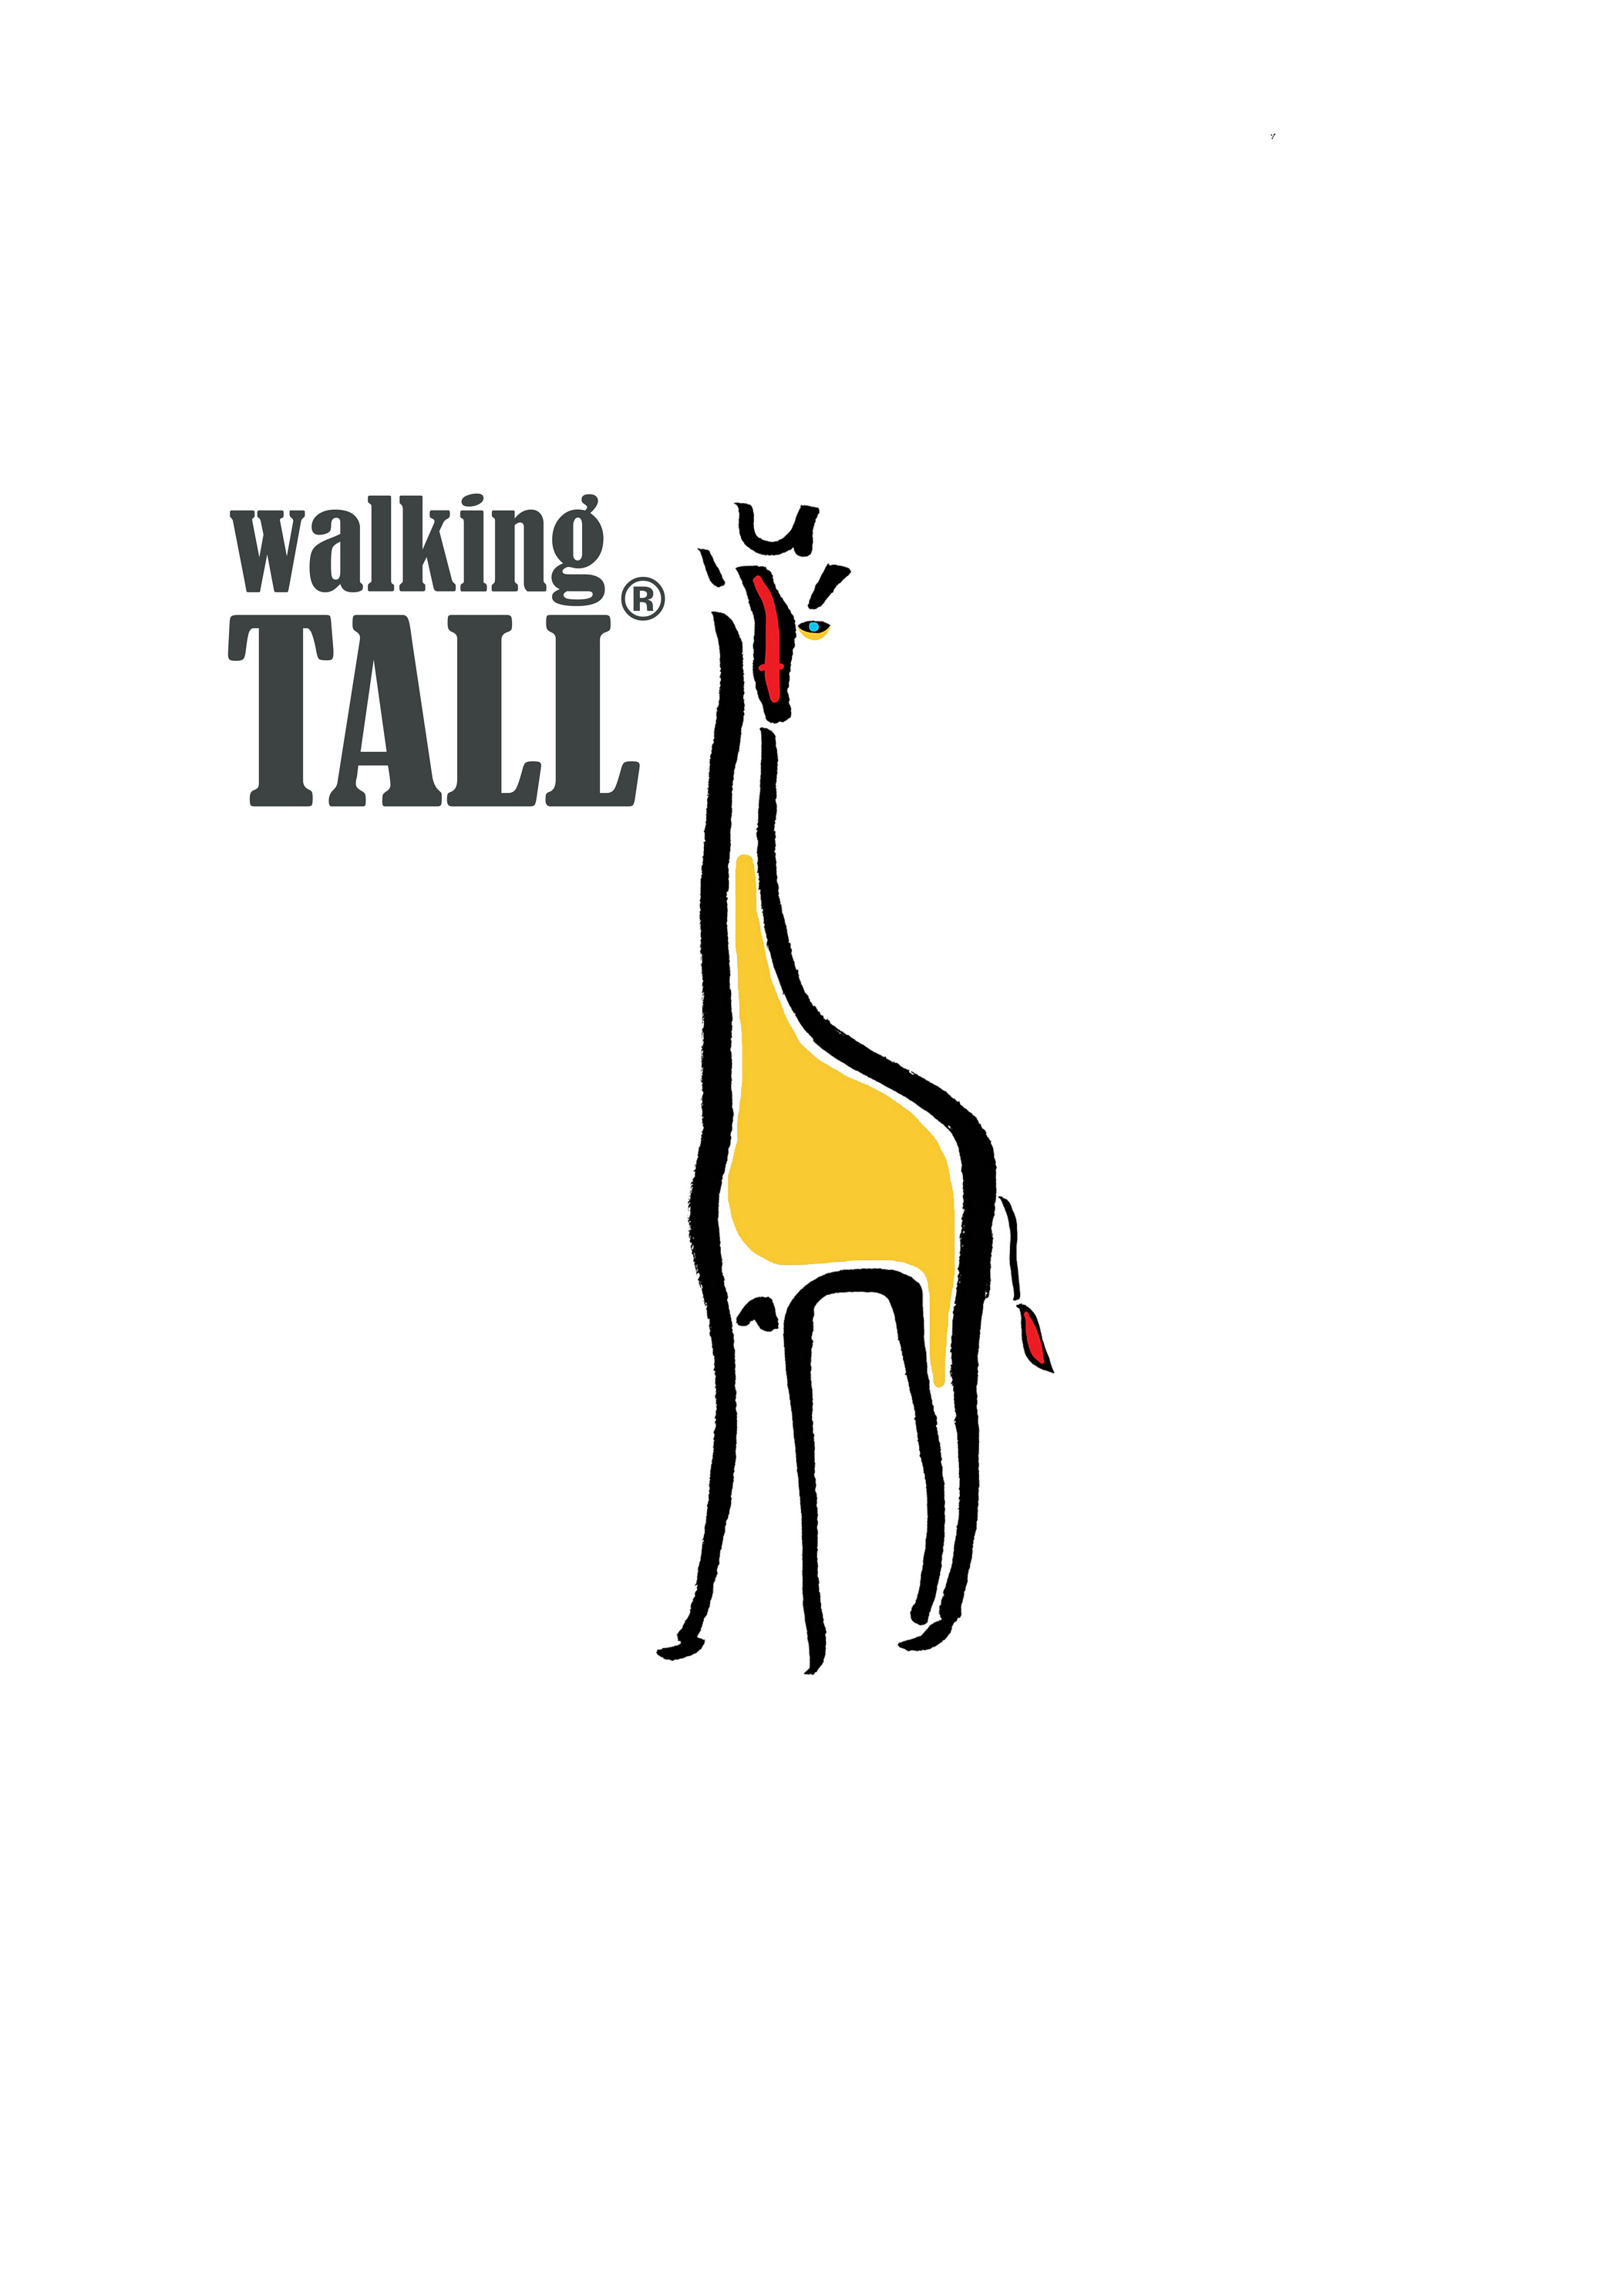 Walking_Talll_logo_Lesley_Evertt8uwvs.jpg